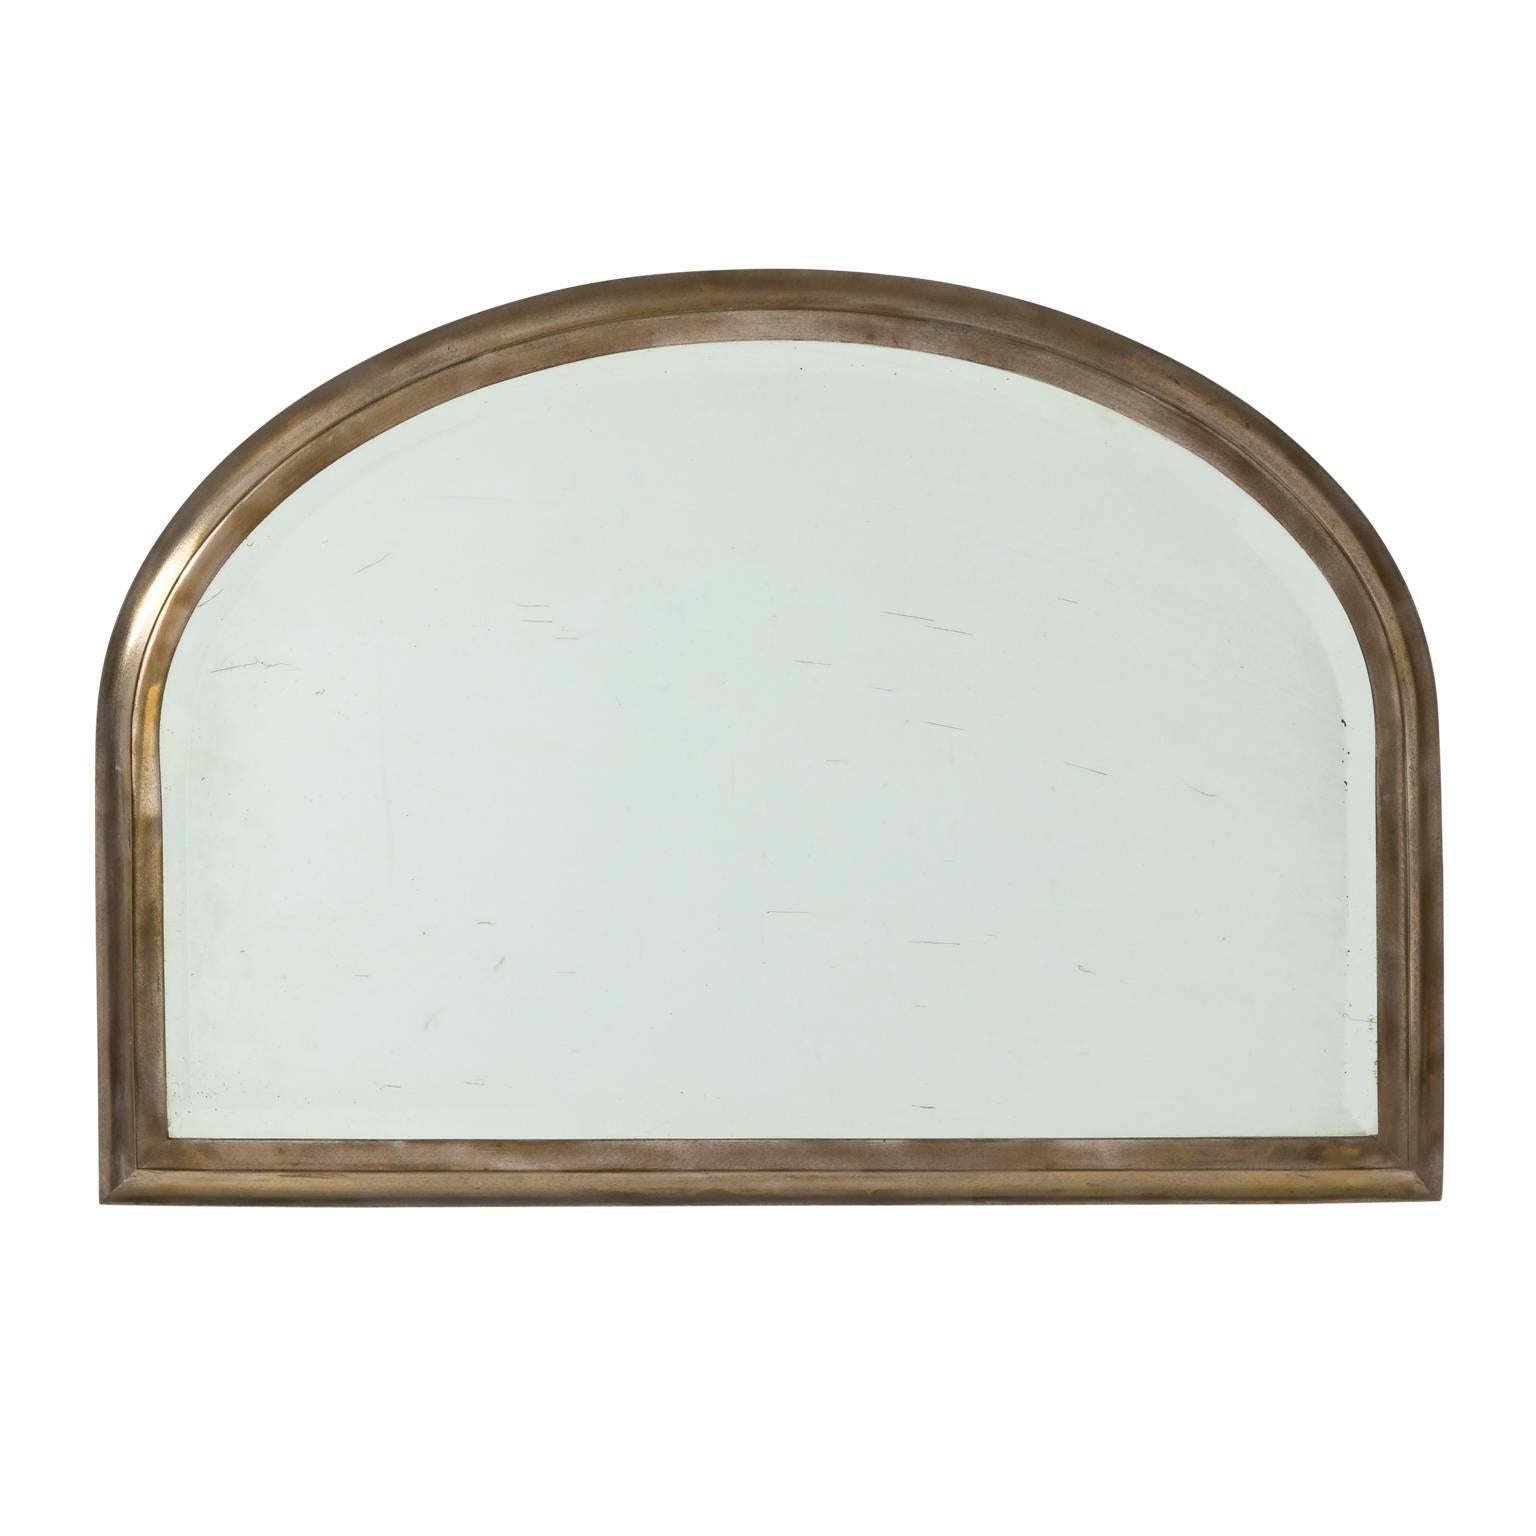 Half-Round Mirror by Brassfitters, circa 1900